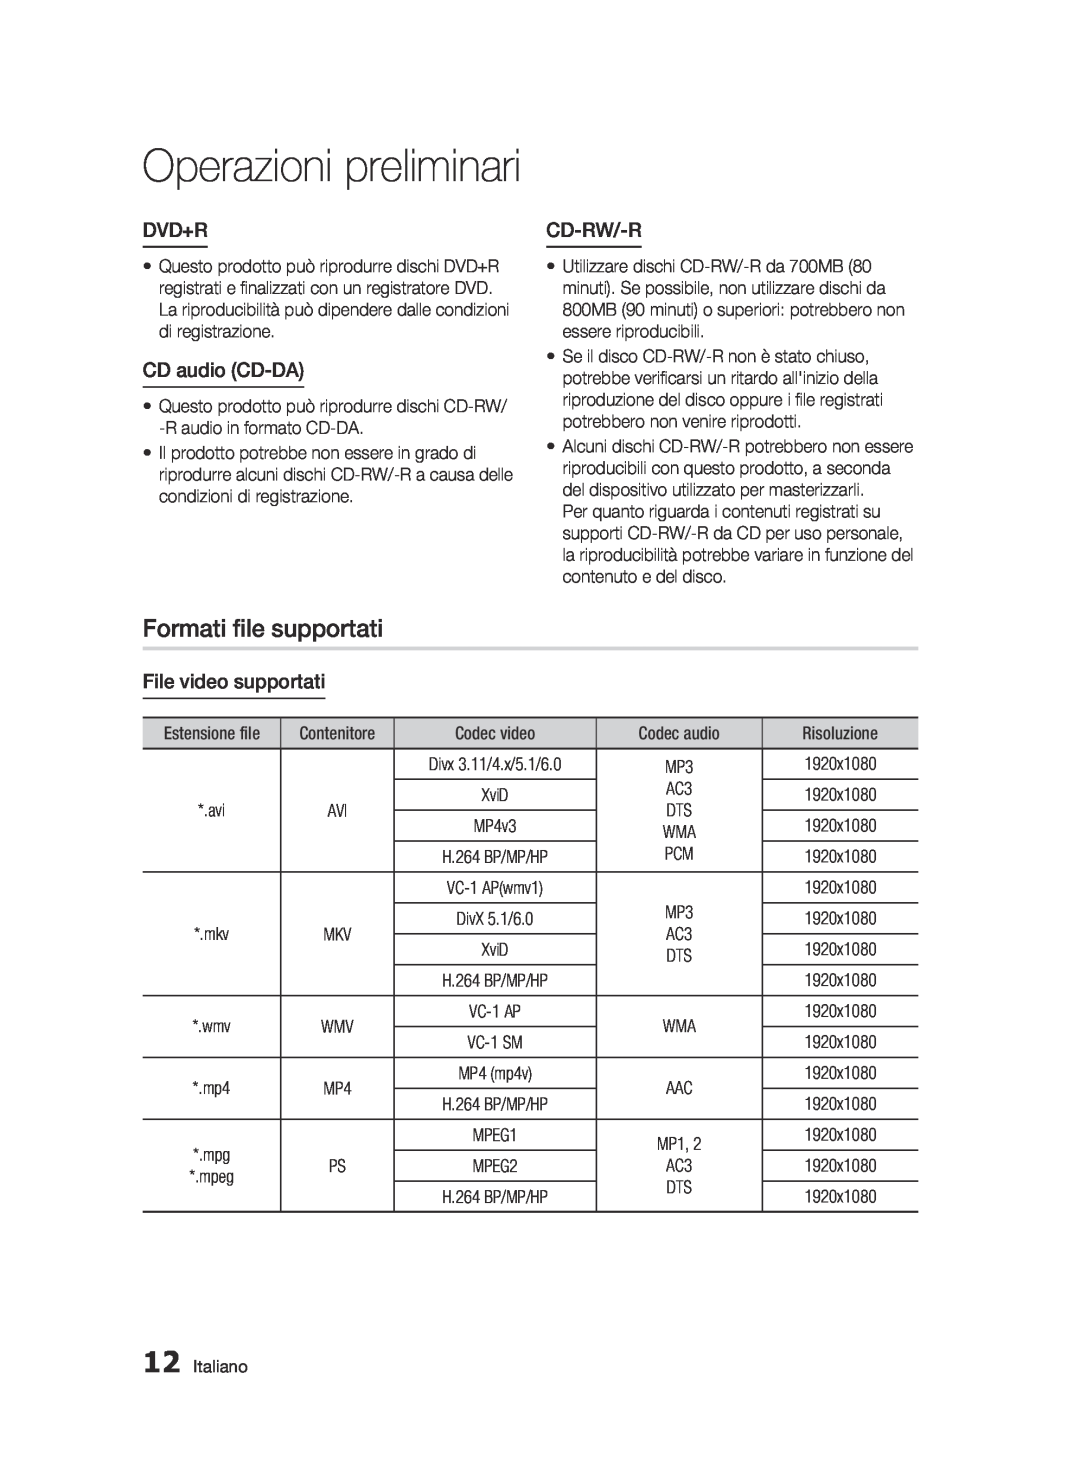 Samsung BD-C6500/XEF manual Formati file supportati, Dvd+R, CD audio CD-DA, Cd-Rw/-R, File video supportati 